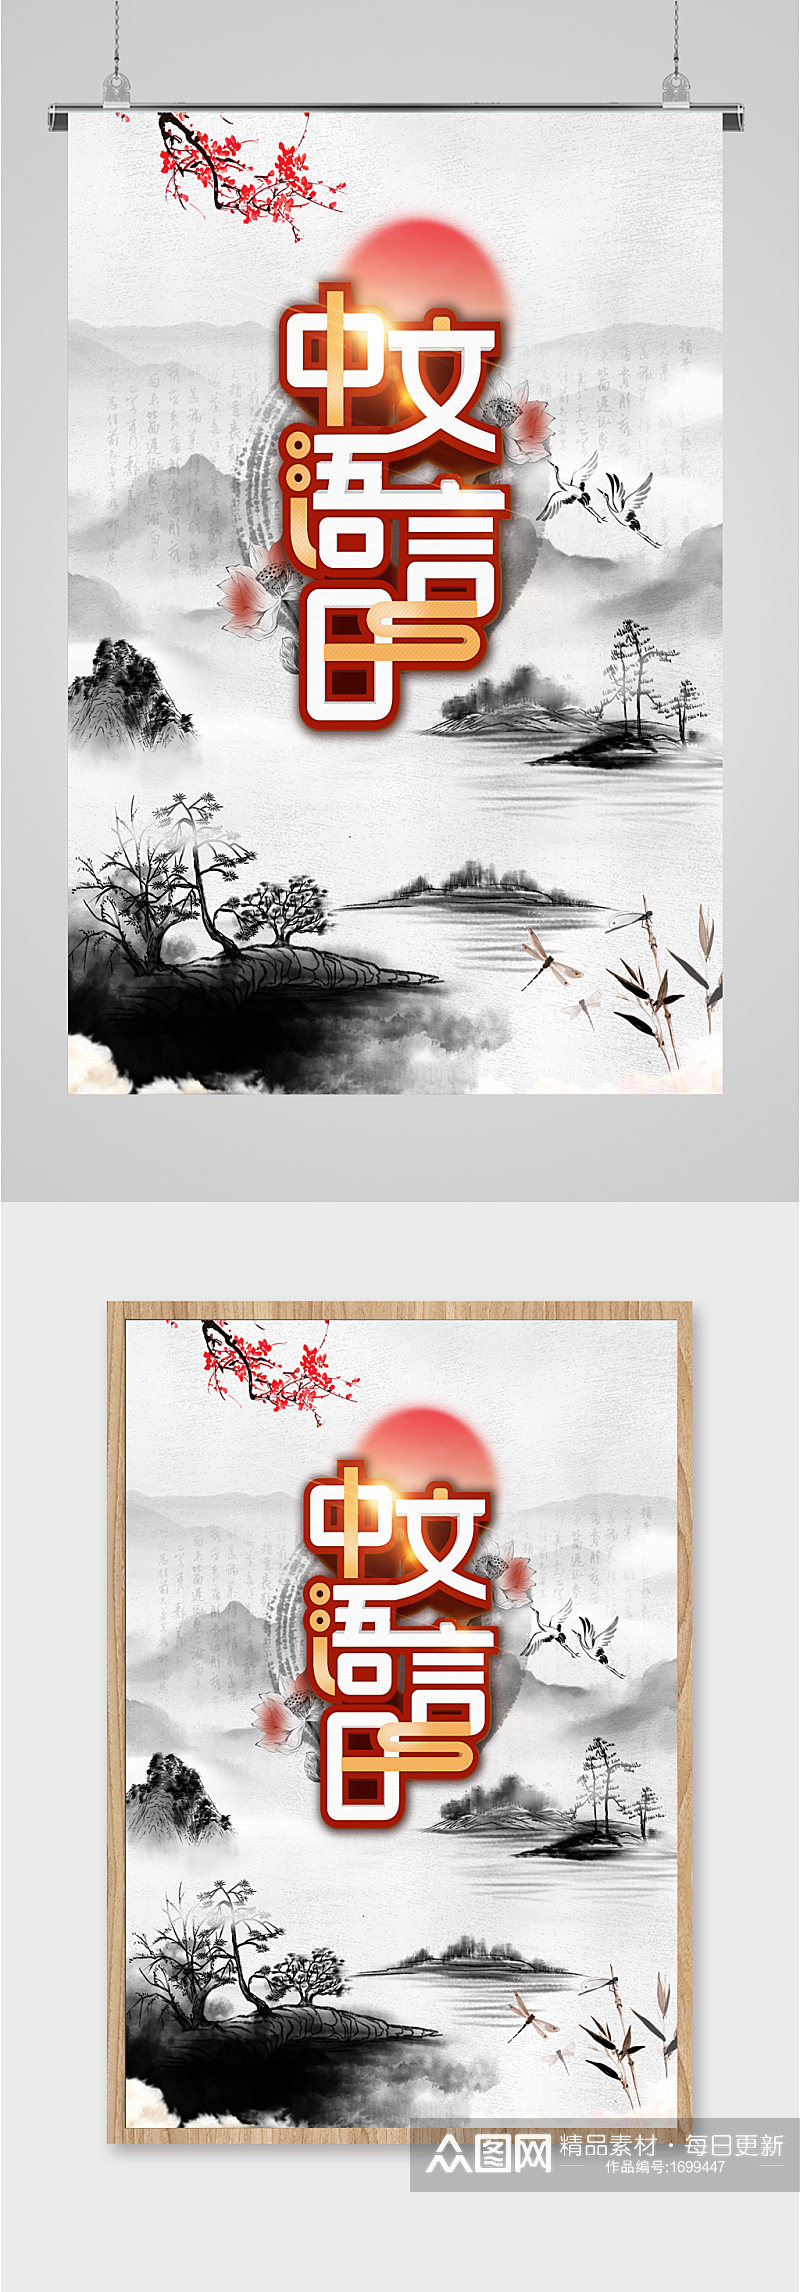 中文汉语言水墨画海报素材